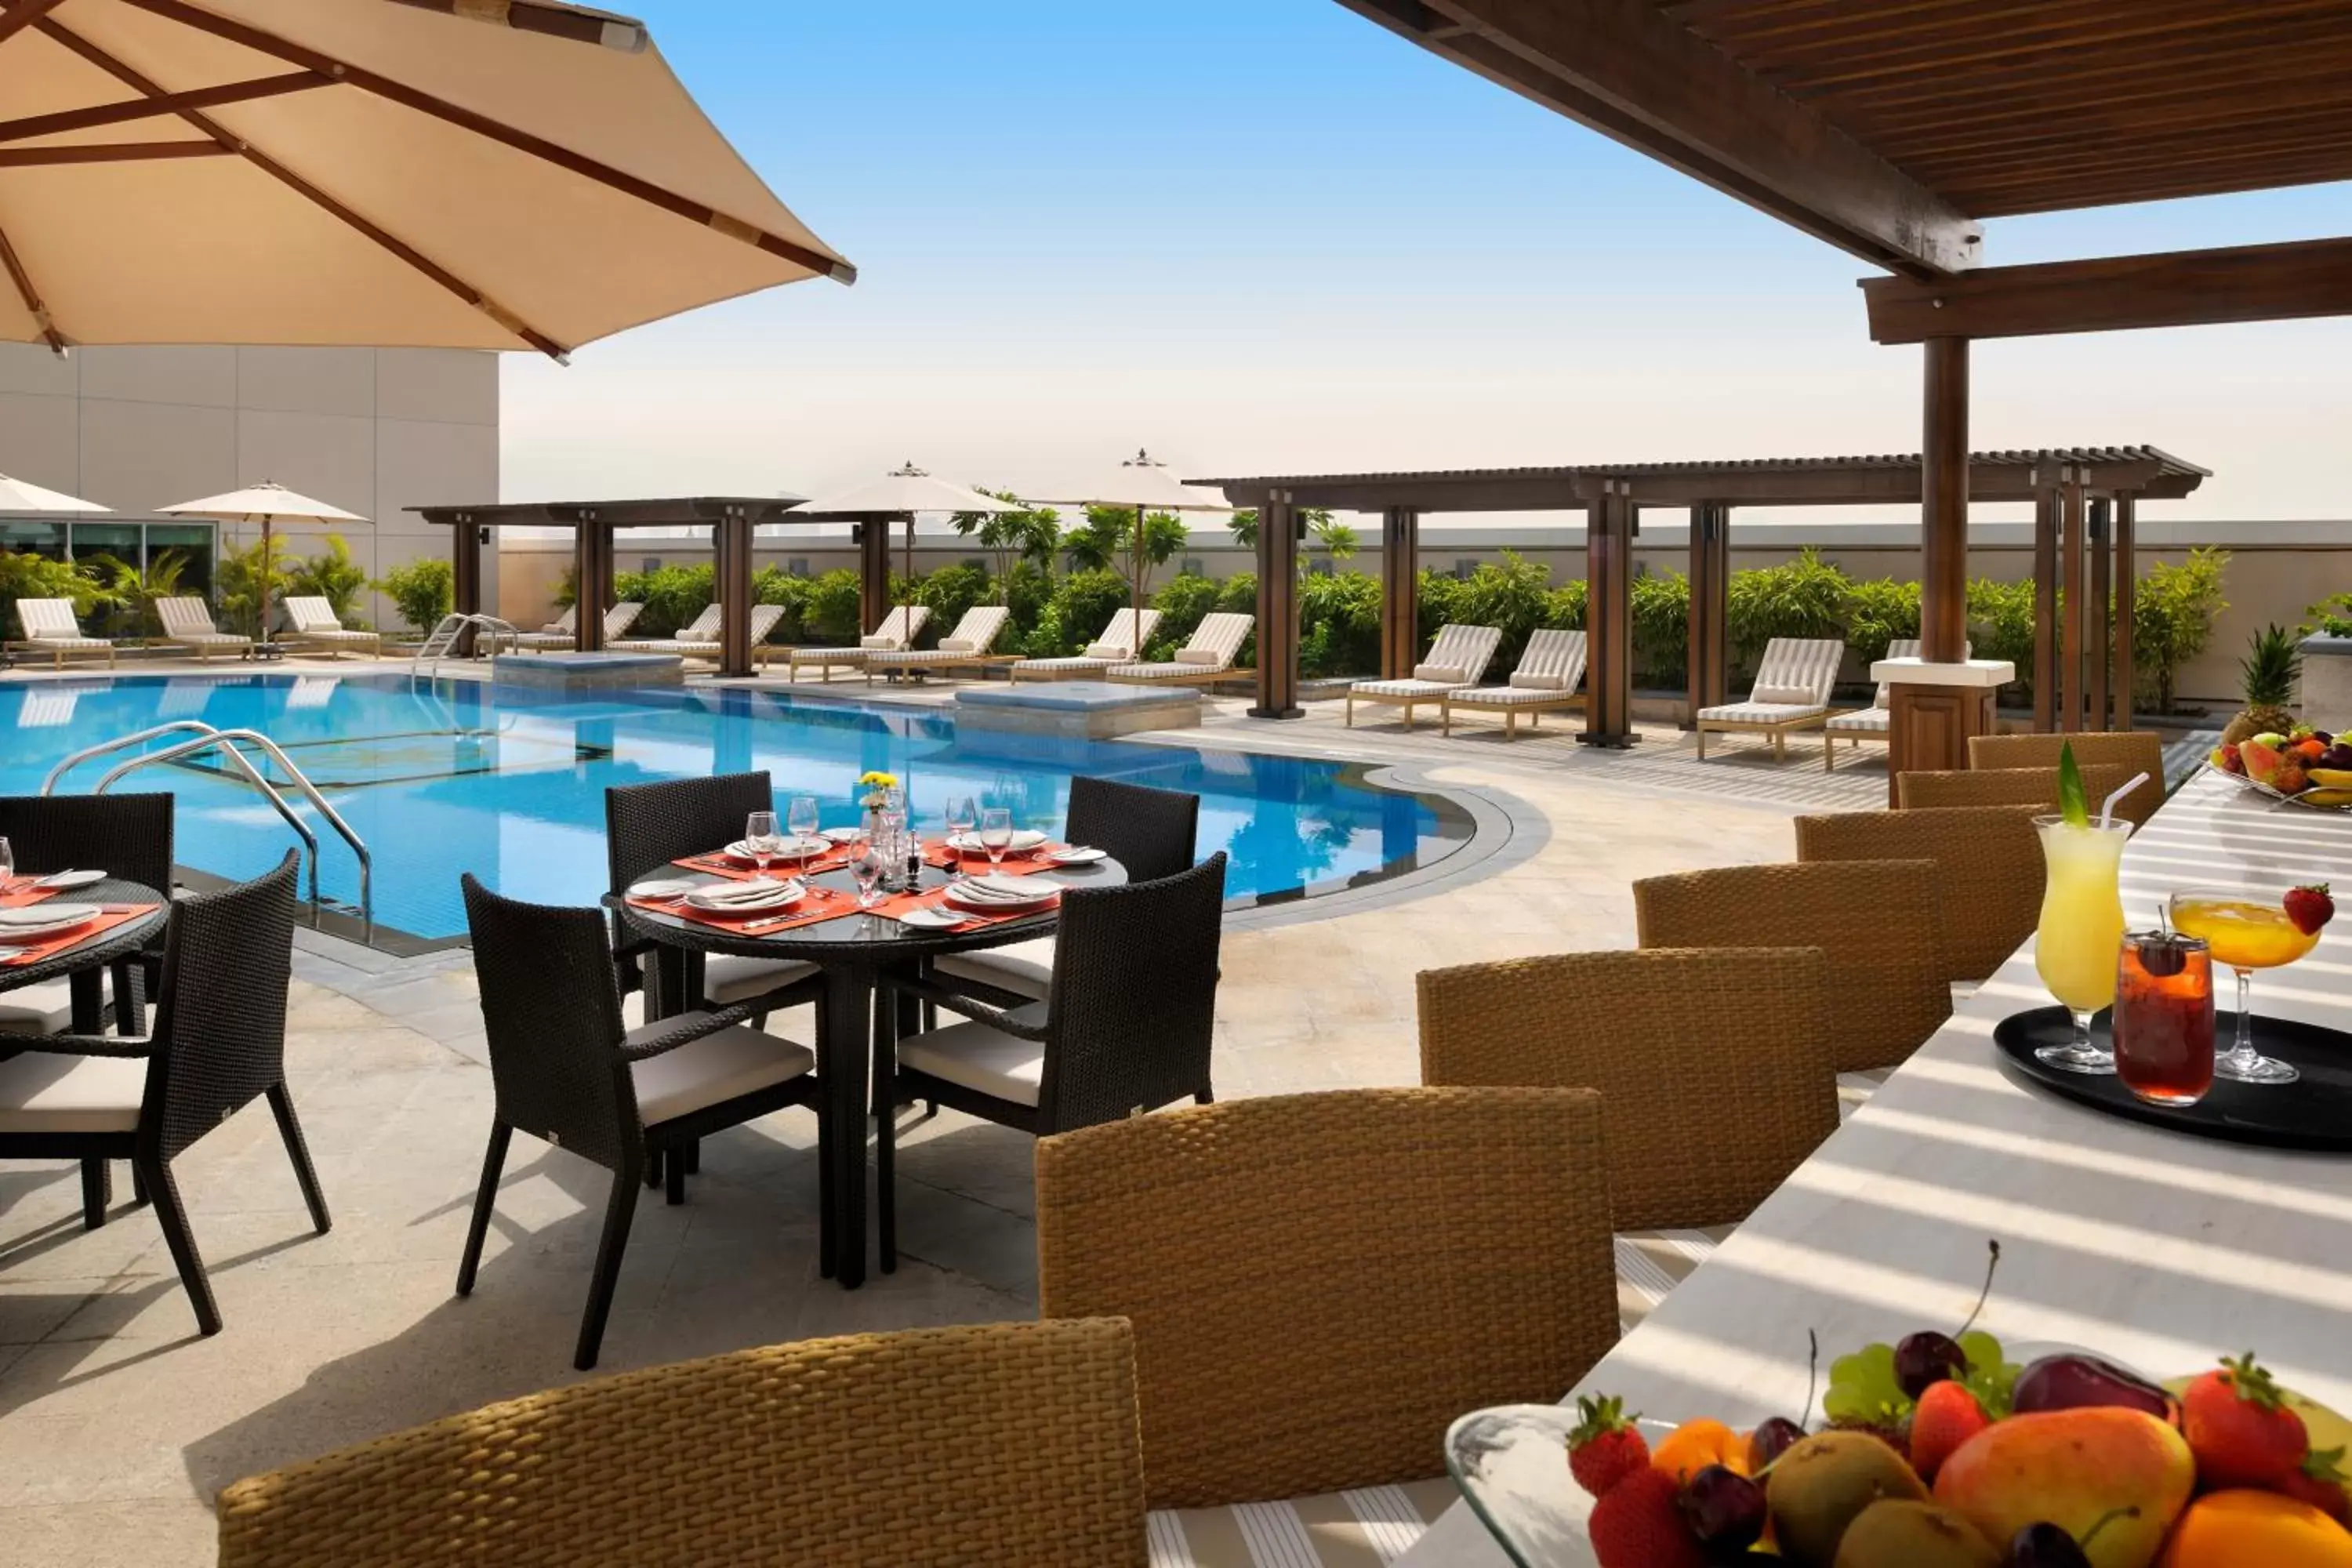 Swimming Pool in Crowne Plaza - Dubai Jumeirah, an IHG Hotel